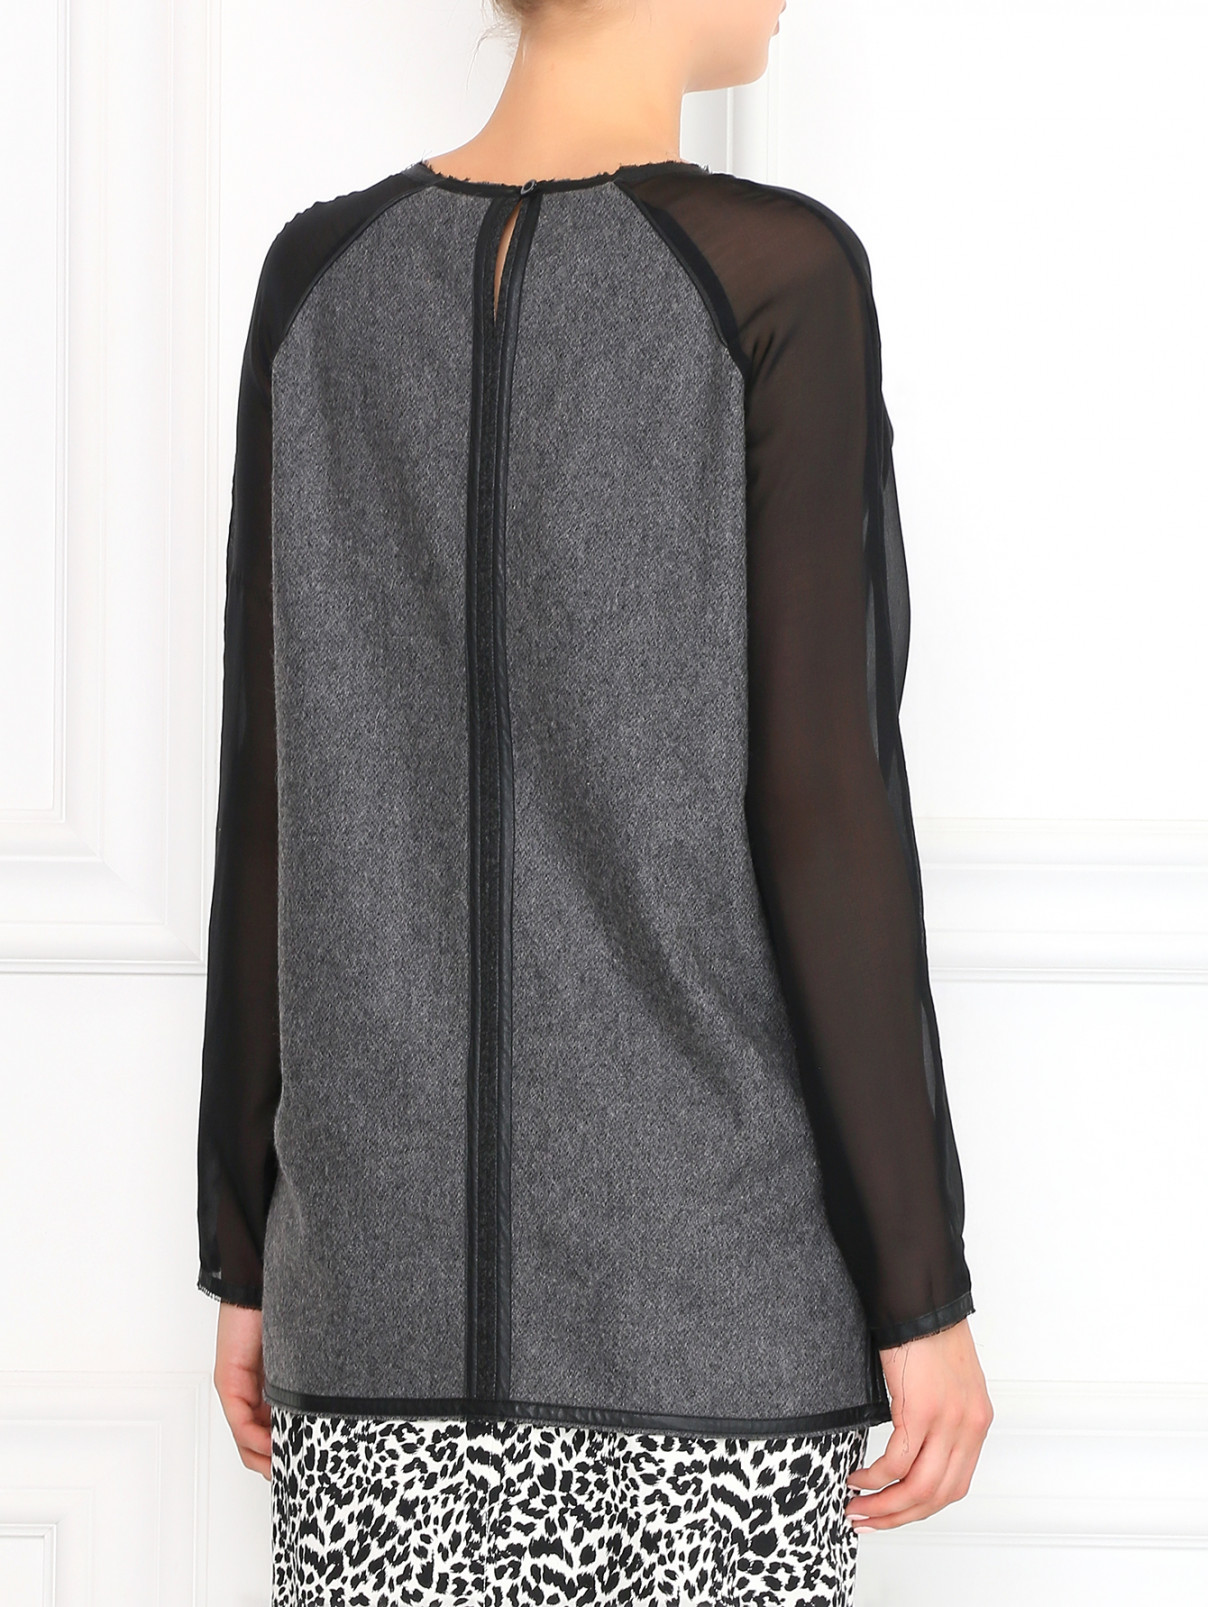 Джемпер из шерсти с шелковыми рукавами Kira Plastinina  –  Модель Верх-Низ1  – Цвет:  Серый